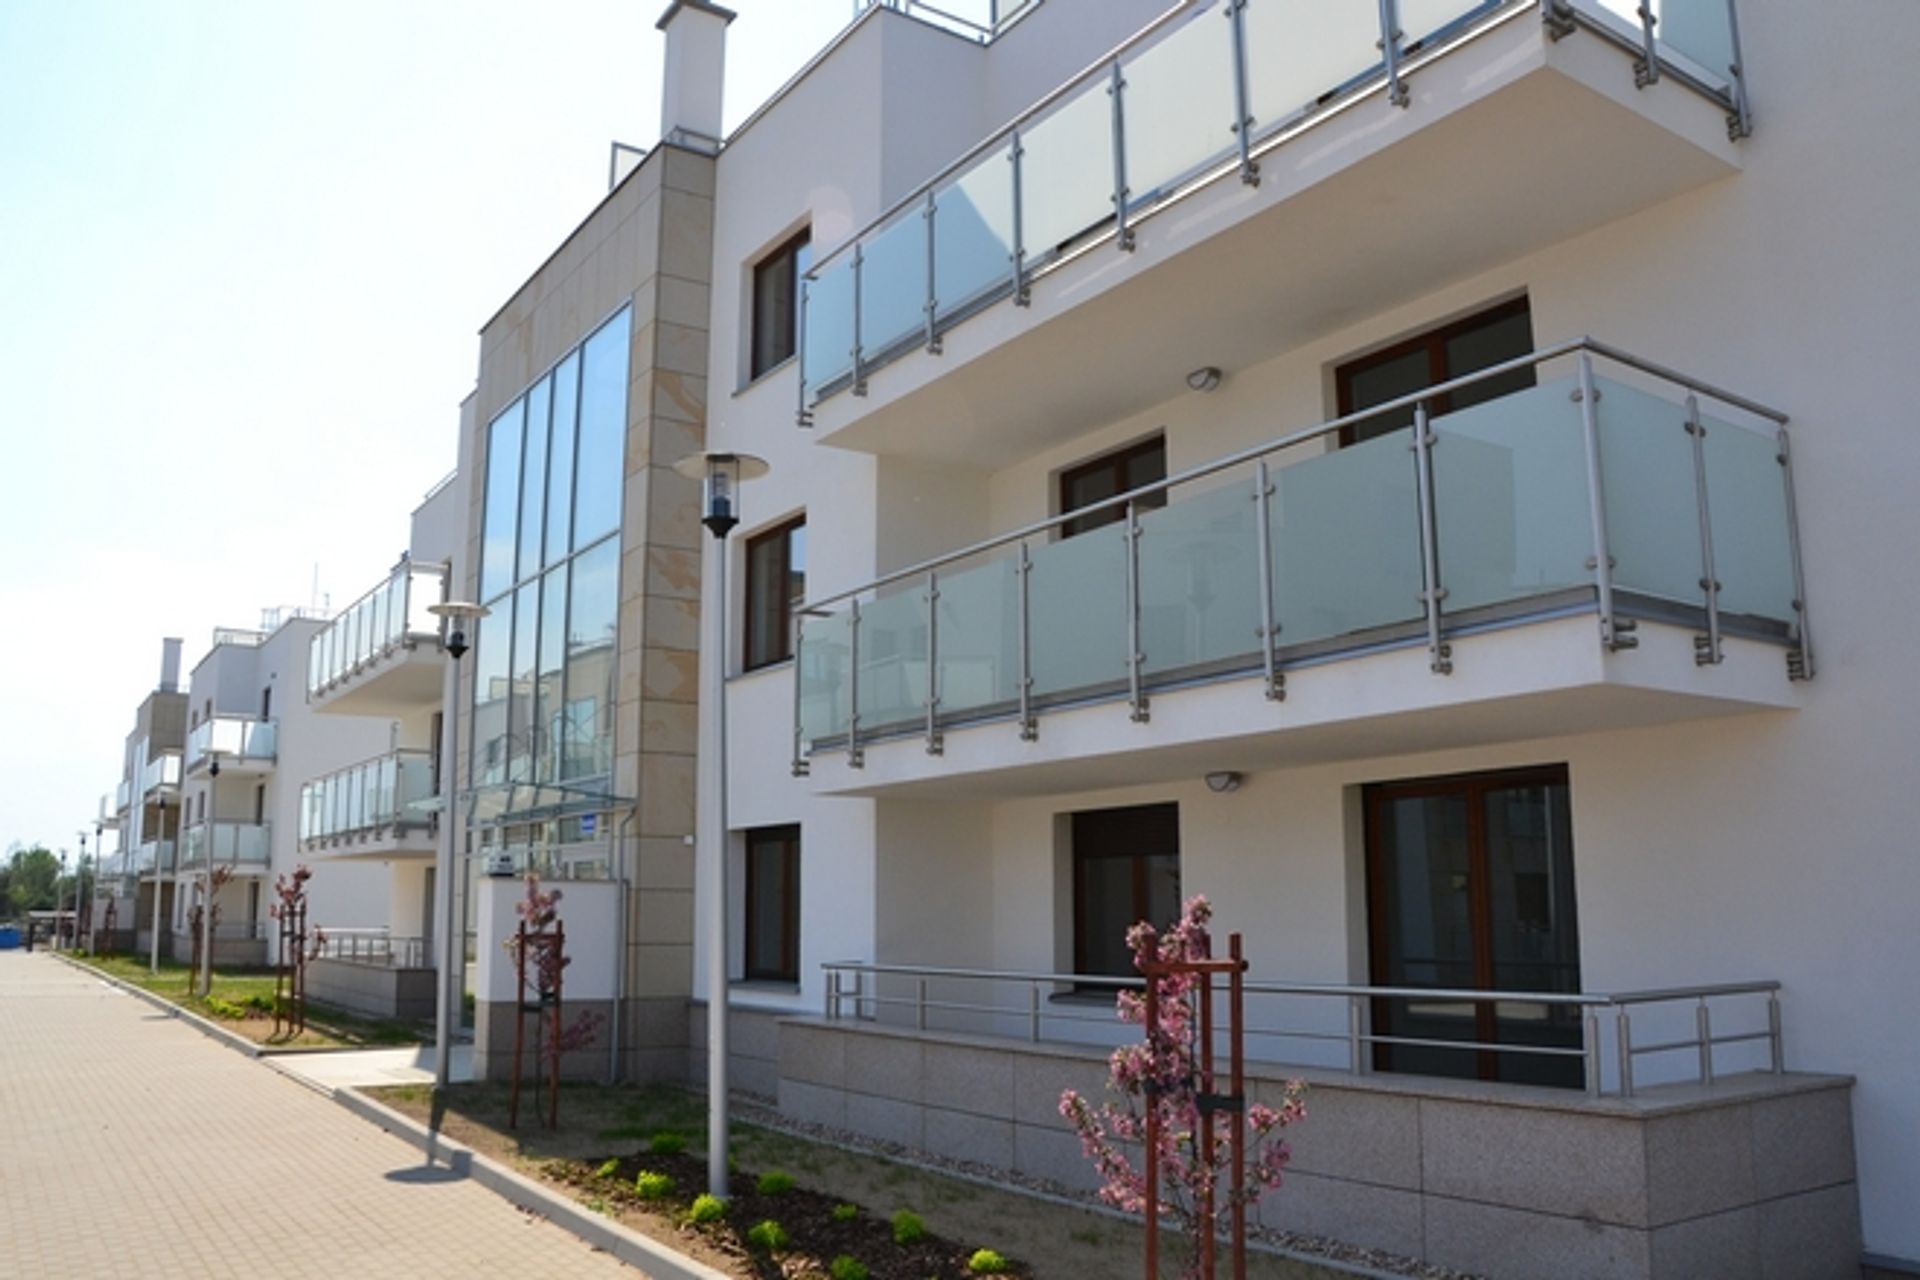  Pierwsze mieszkania na nowym osiedlu na Grabiszynku już gotowe